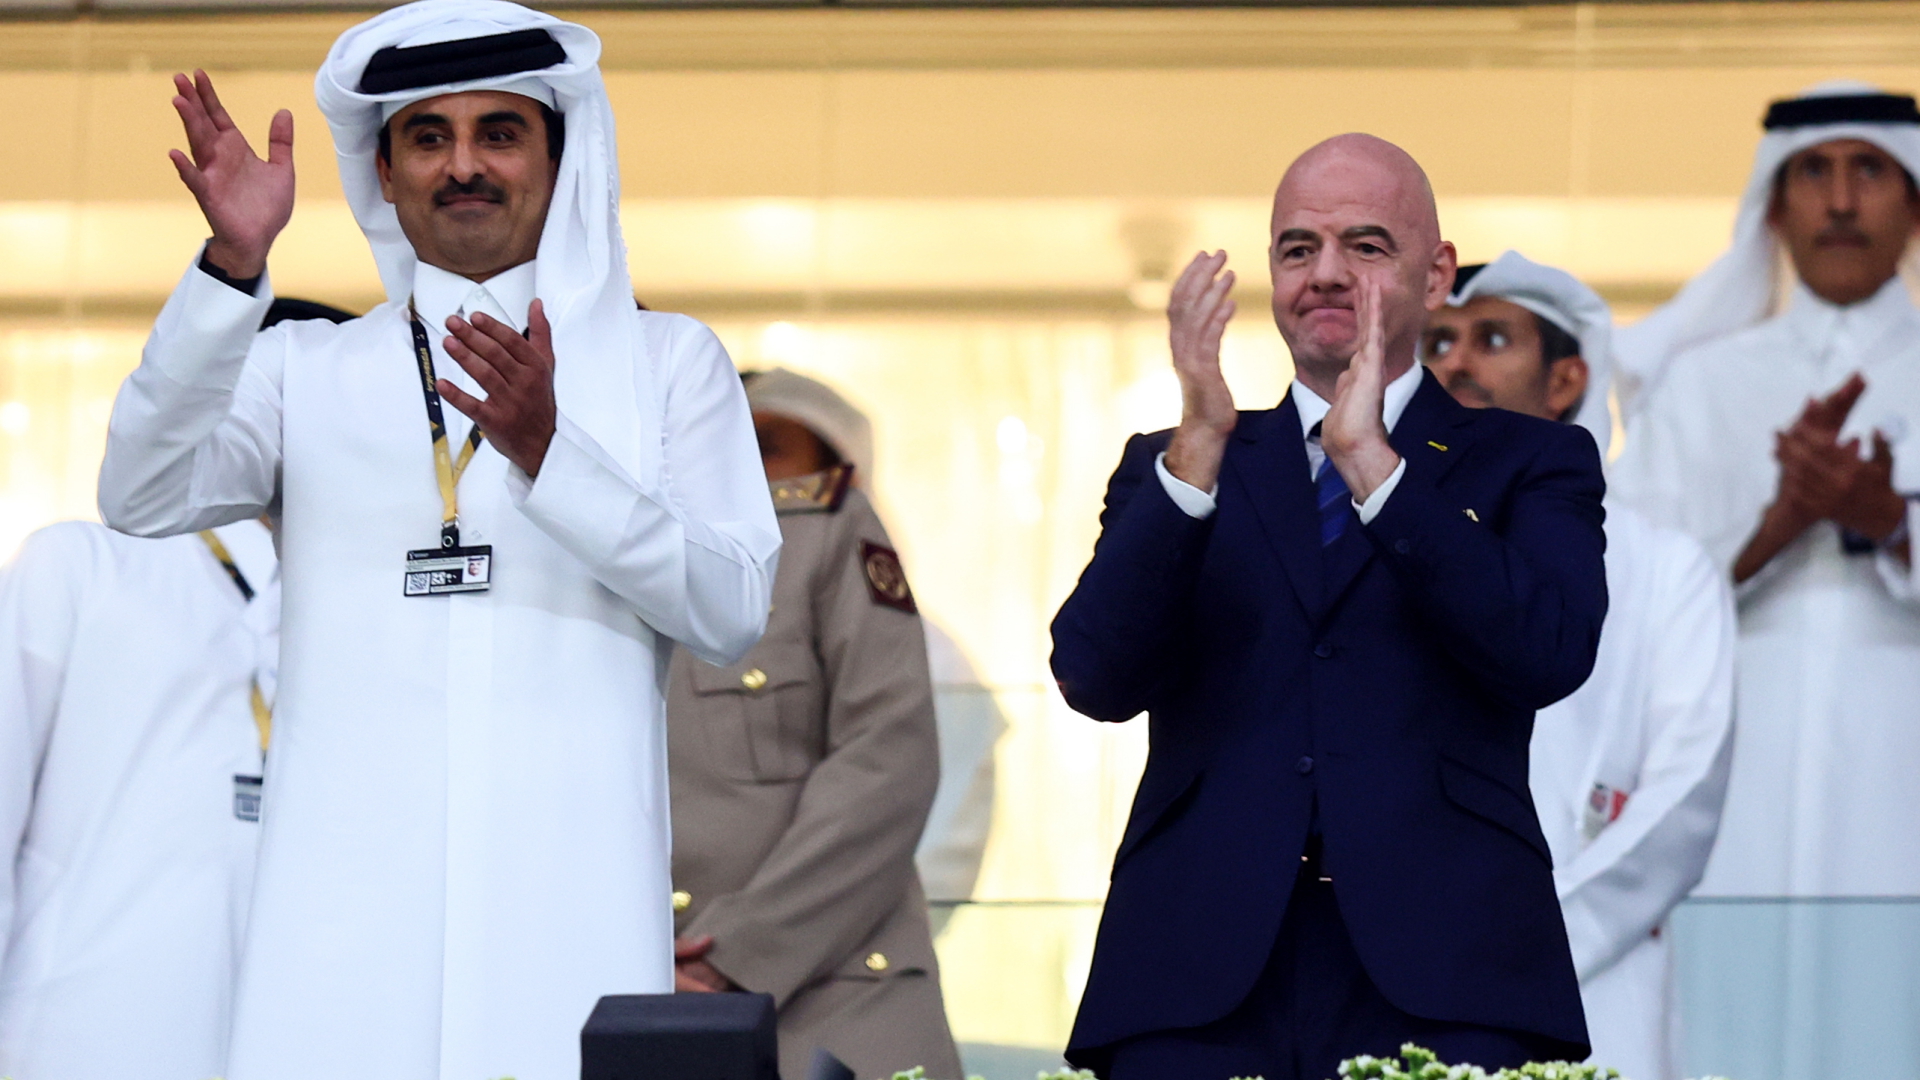 Der Emir von Katar, Scheich Tamim, winkt bei einem Spiel im Al-Bait Stadion in Katar ins Publikum - neben ihm steht FIFA-Präsident Gianni Infantino und applaudiert. | dpa